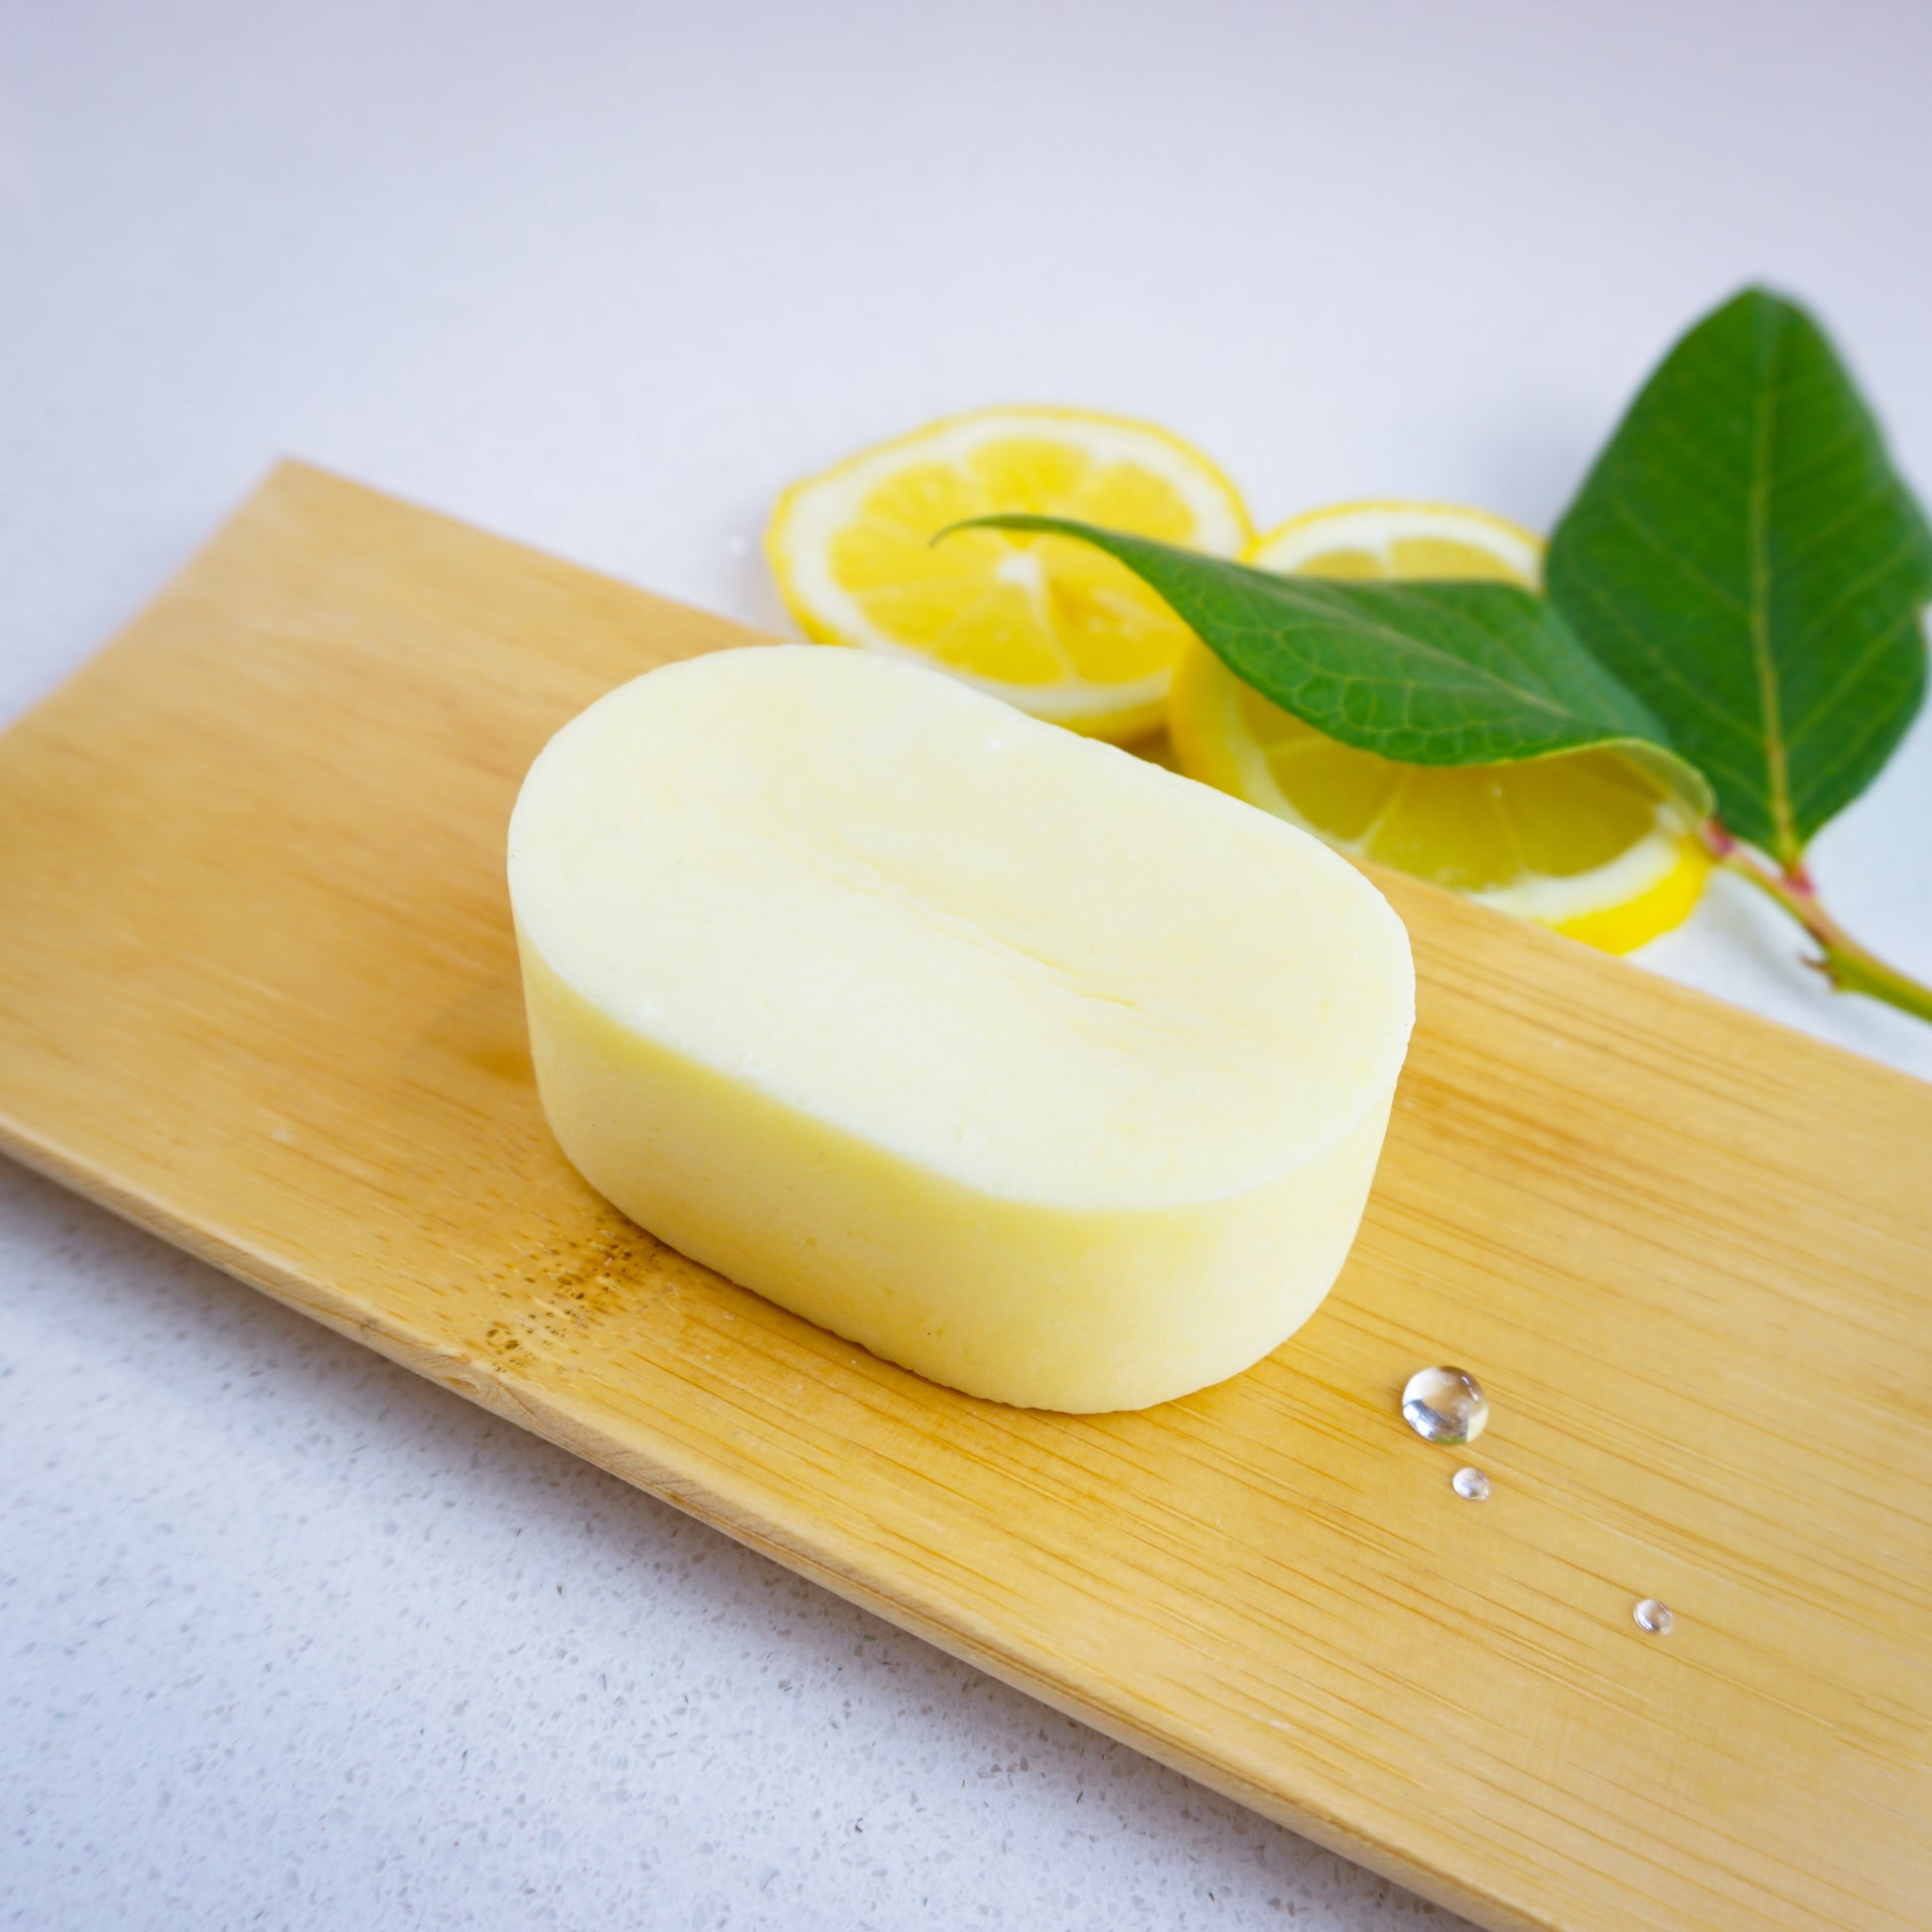 Washla 60g Lemon shampoo bar on bamboo tray with fresh lemon slices for decoration